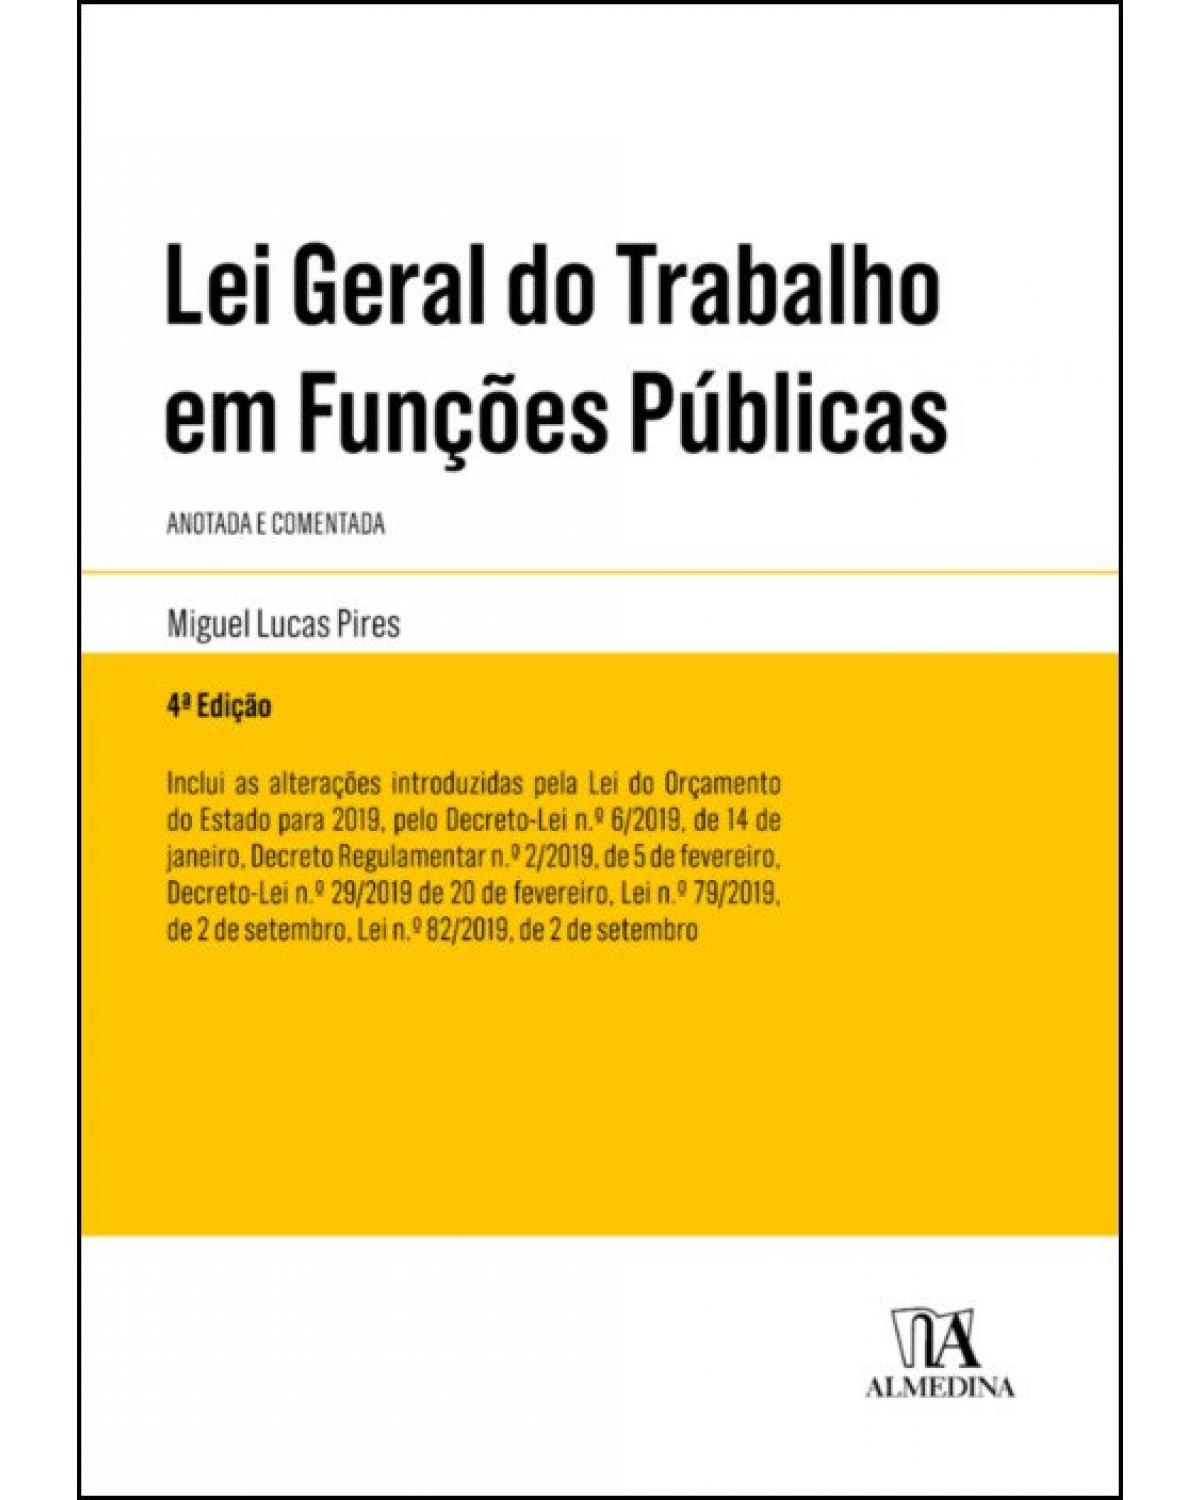 Lei geral do trabalho em funções públicas - Anotada e comentada - 4ª Edição | 2019